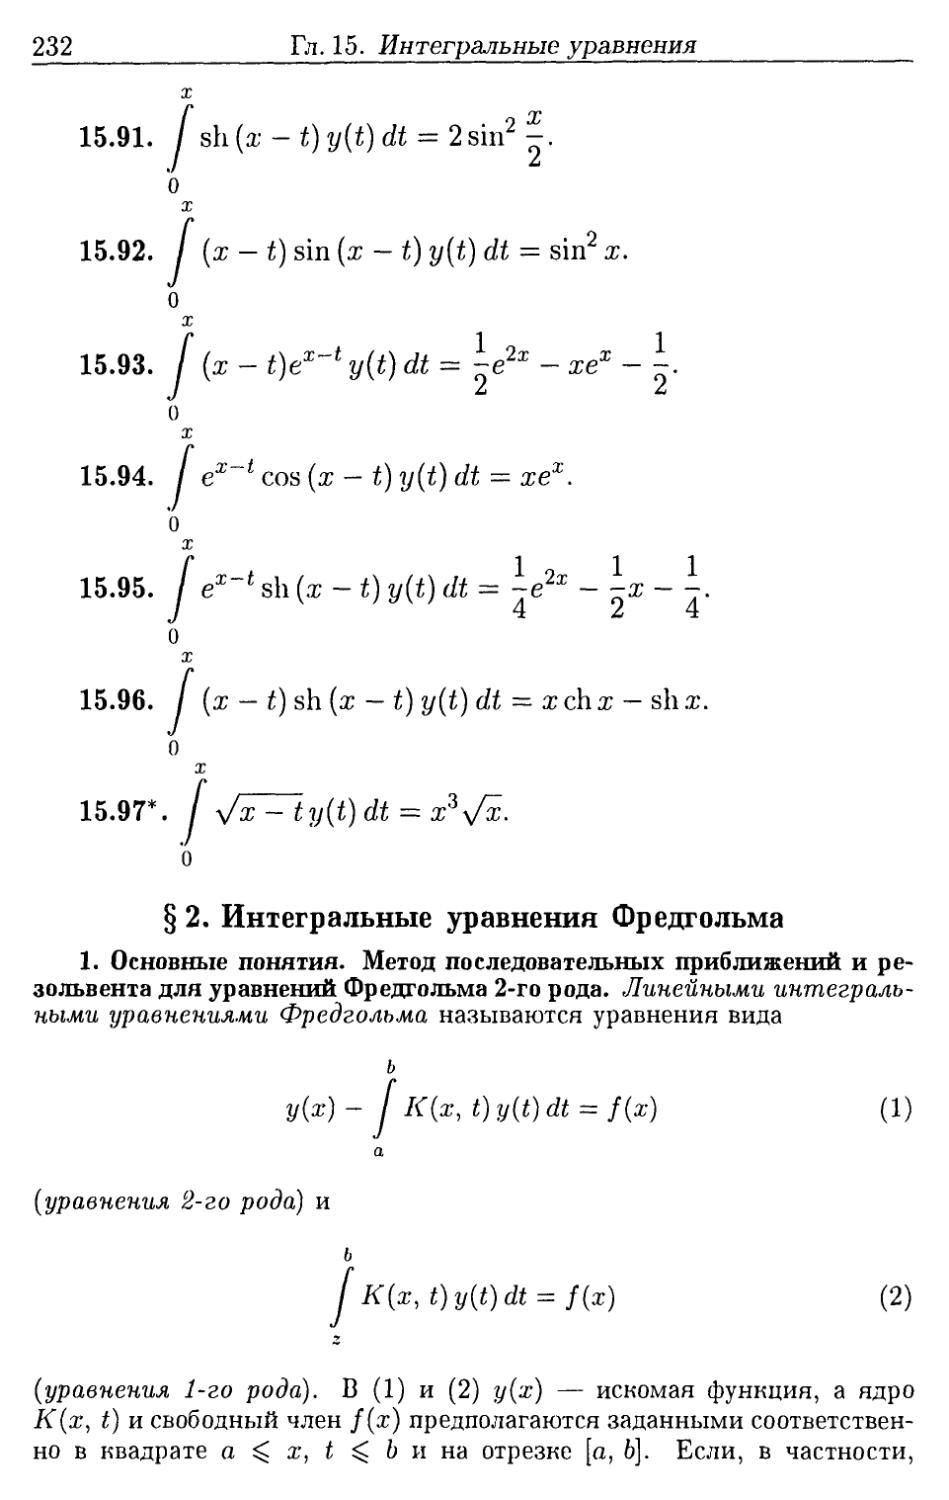 §2. Интегральные уравнения Фредгольма